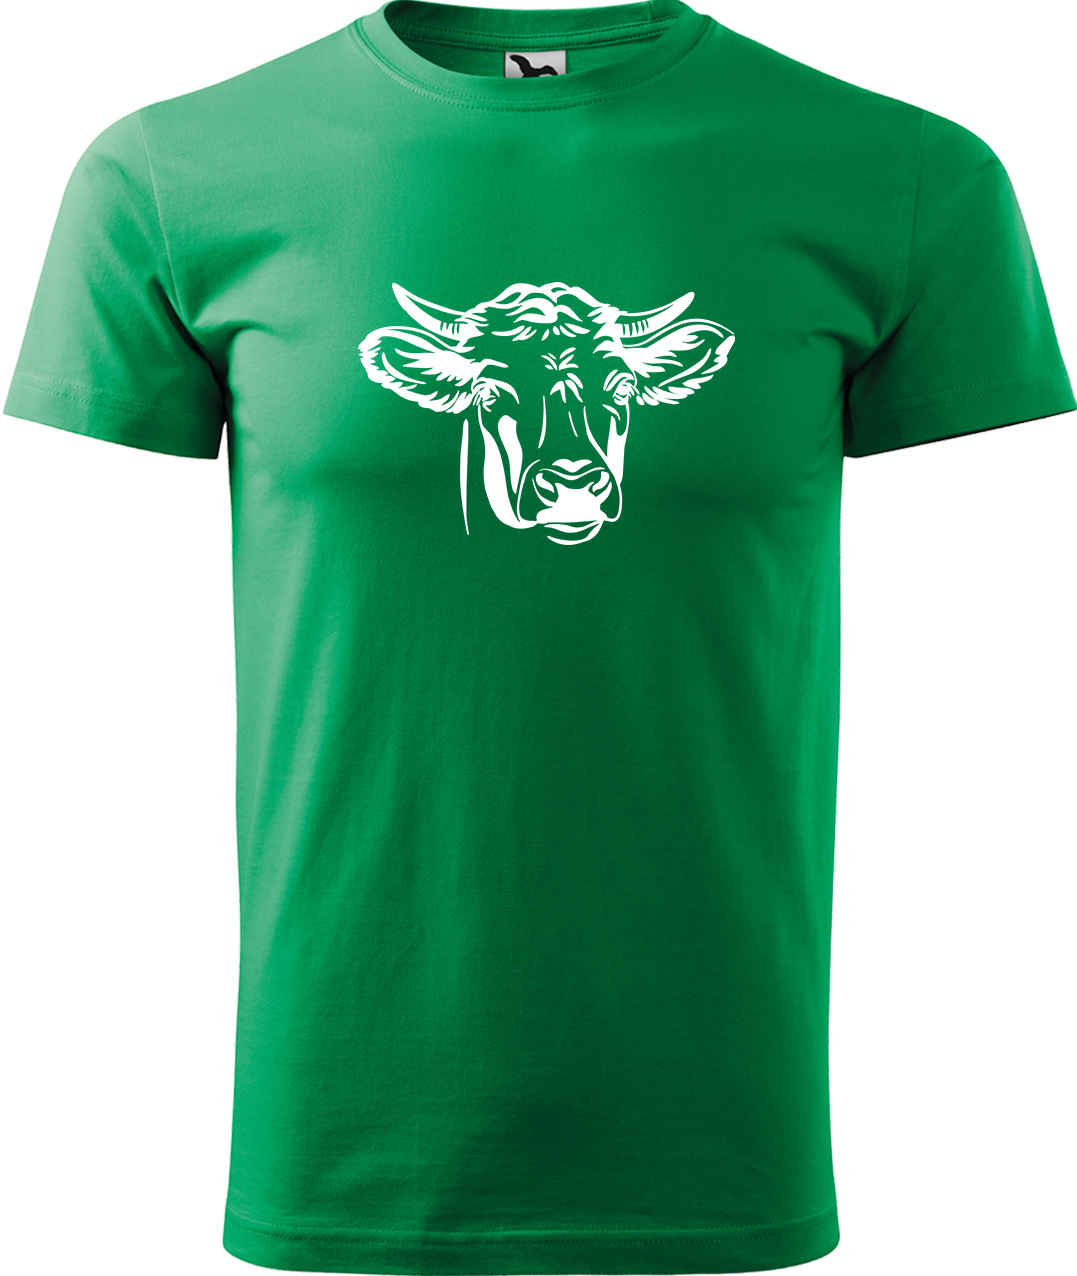 Pánské tričko s krávou - Hlava krávy Velikost: M, Barva: Středně zelená (16), Střih: pánský